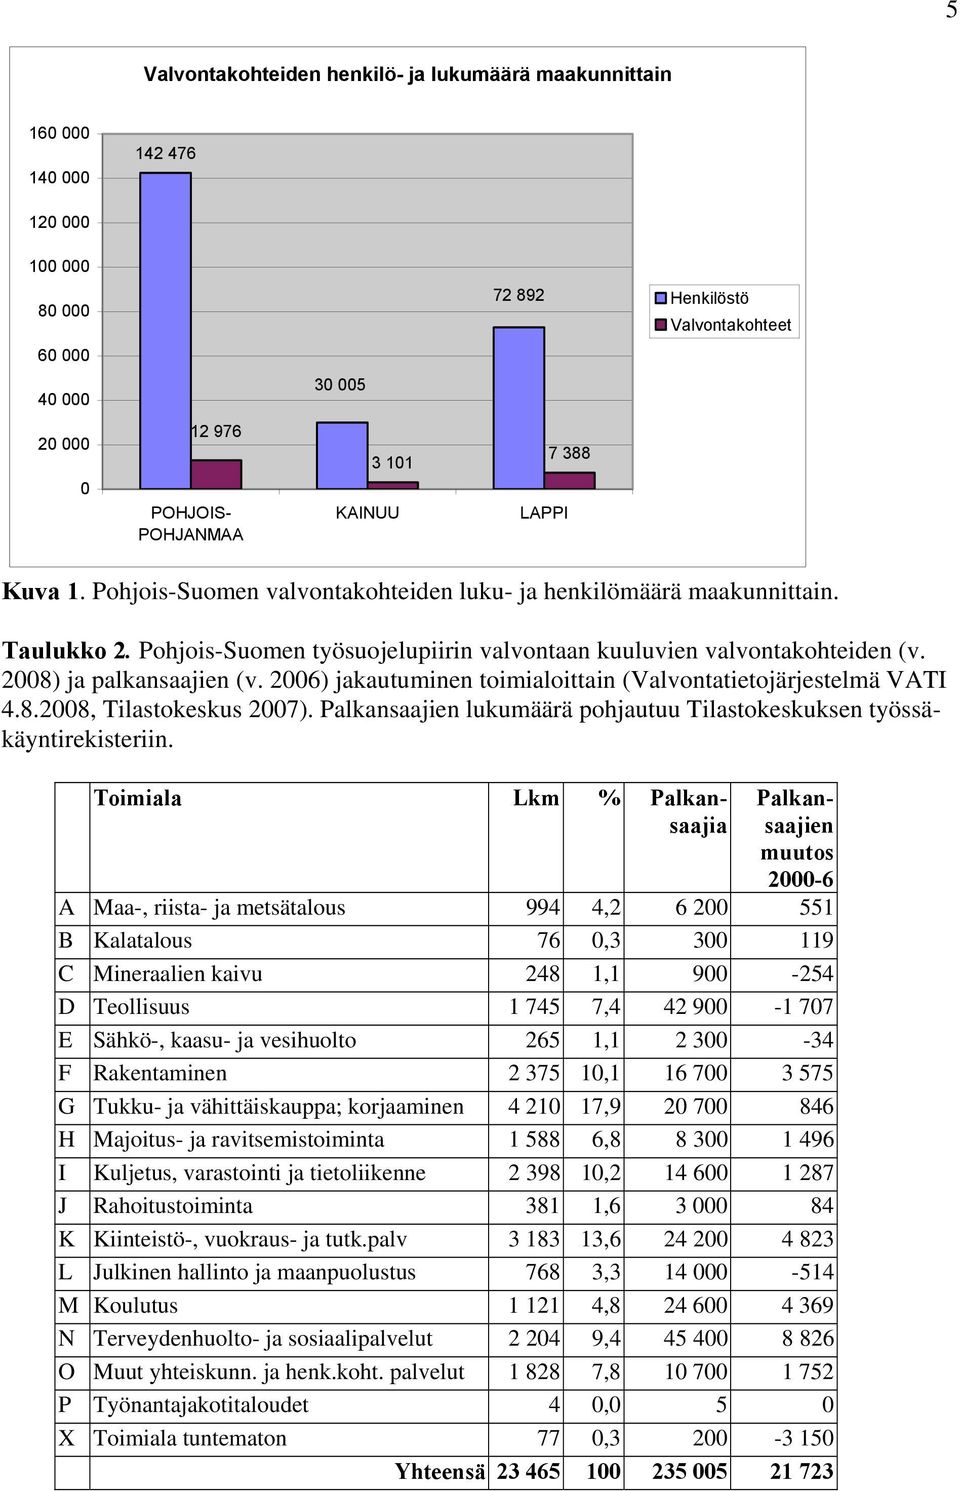 Pohjois-Suomen työsuojelupiirin valvontaan kuuluvien valvontakohteiden (v. 2008) ja palkansaajien (v. 2006) jakautuminen toimialoittain (Valvontatietojärjestelmä VATI 4.8.2008, Tilastokeskus 2007).